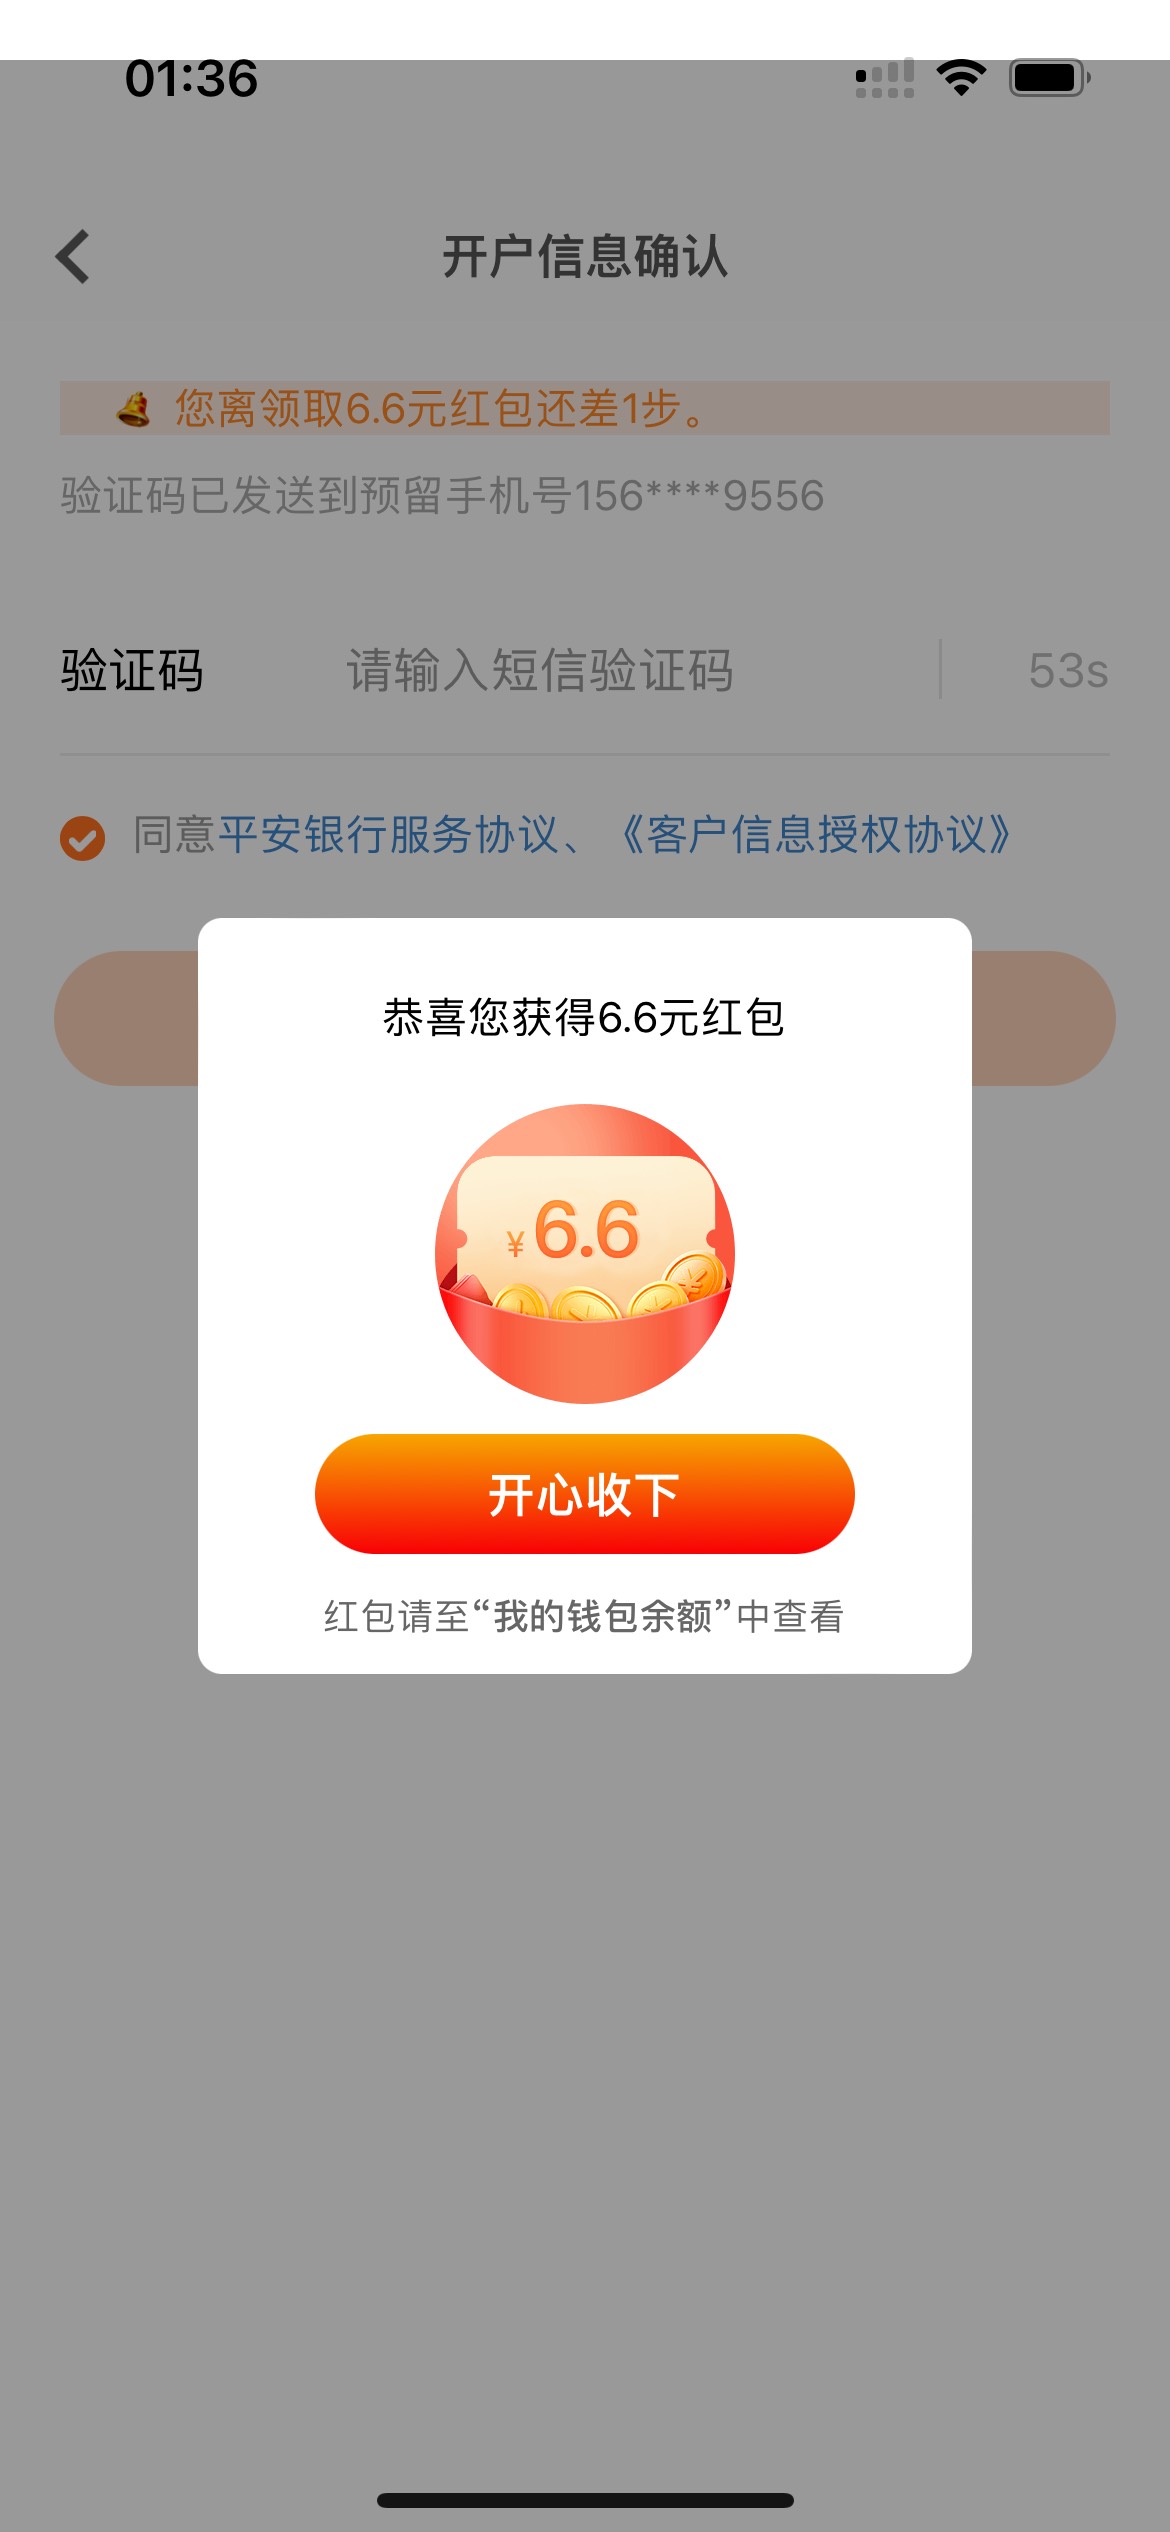 平安好车主app搜索领6.6，开户提现注销一气呵成


99 / 作者:愈柔 / 